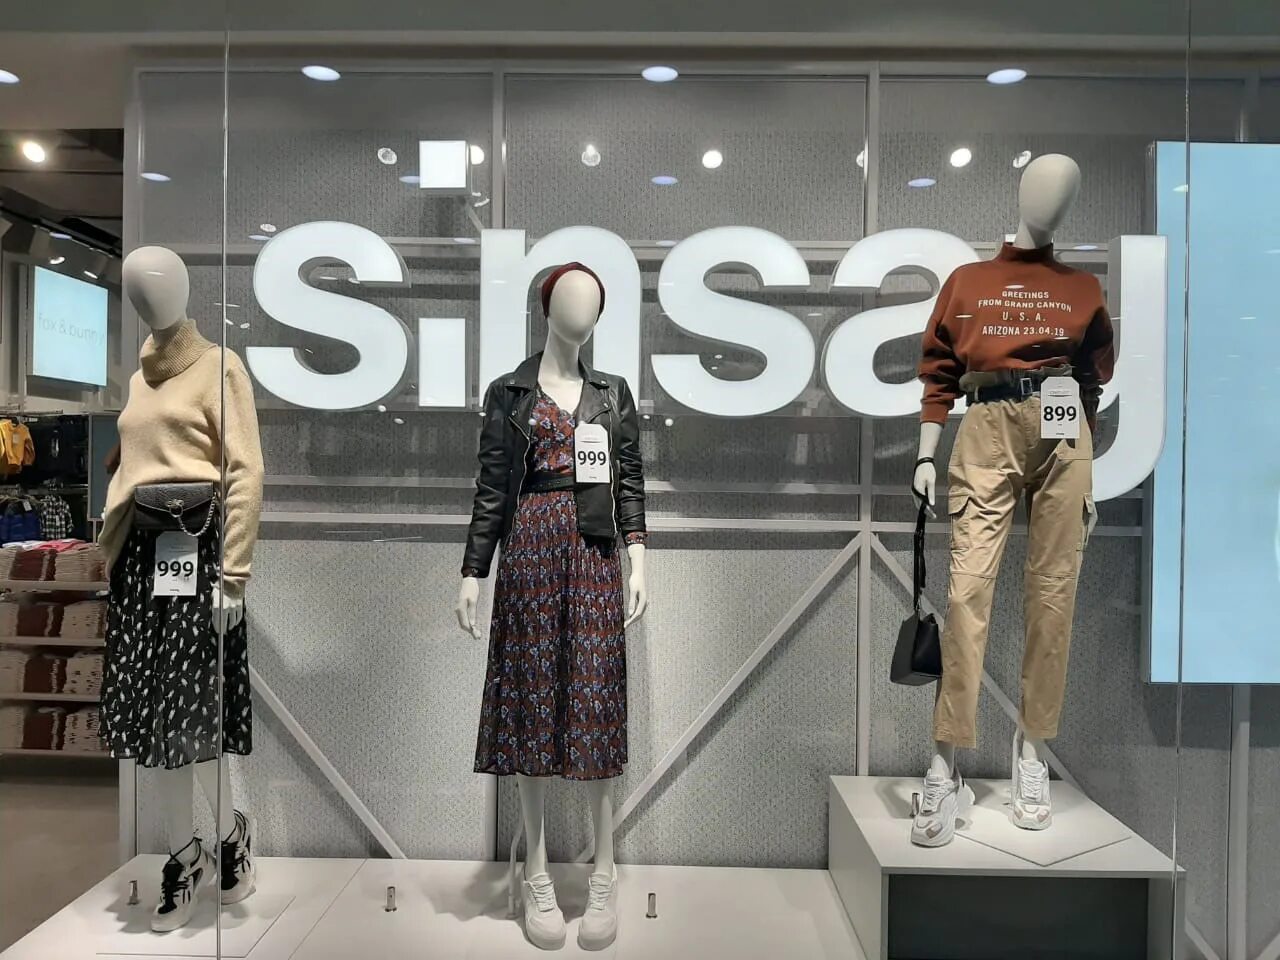 Сенсей магазин одежды. Бренд одежды Sinsay. Sinsay витрины. Sensei одежда интернет магазин.